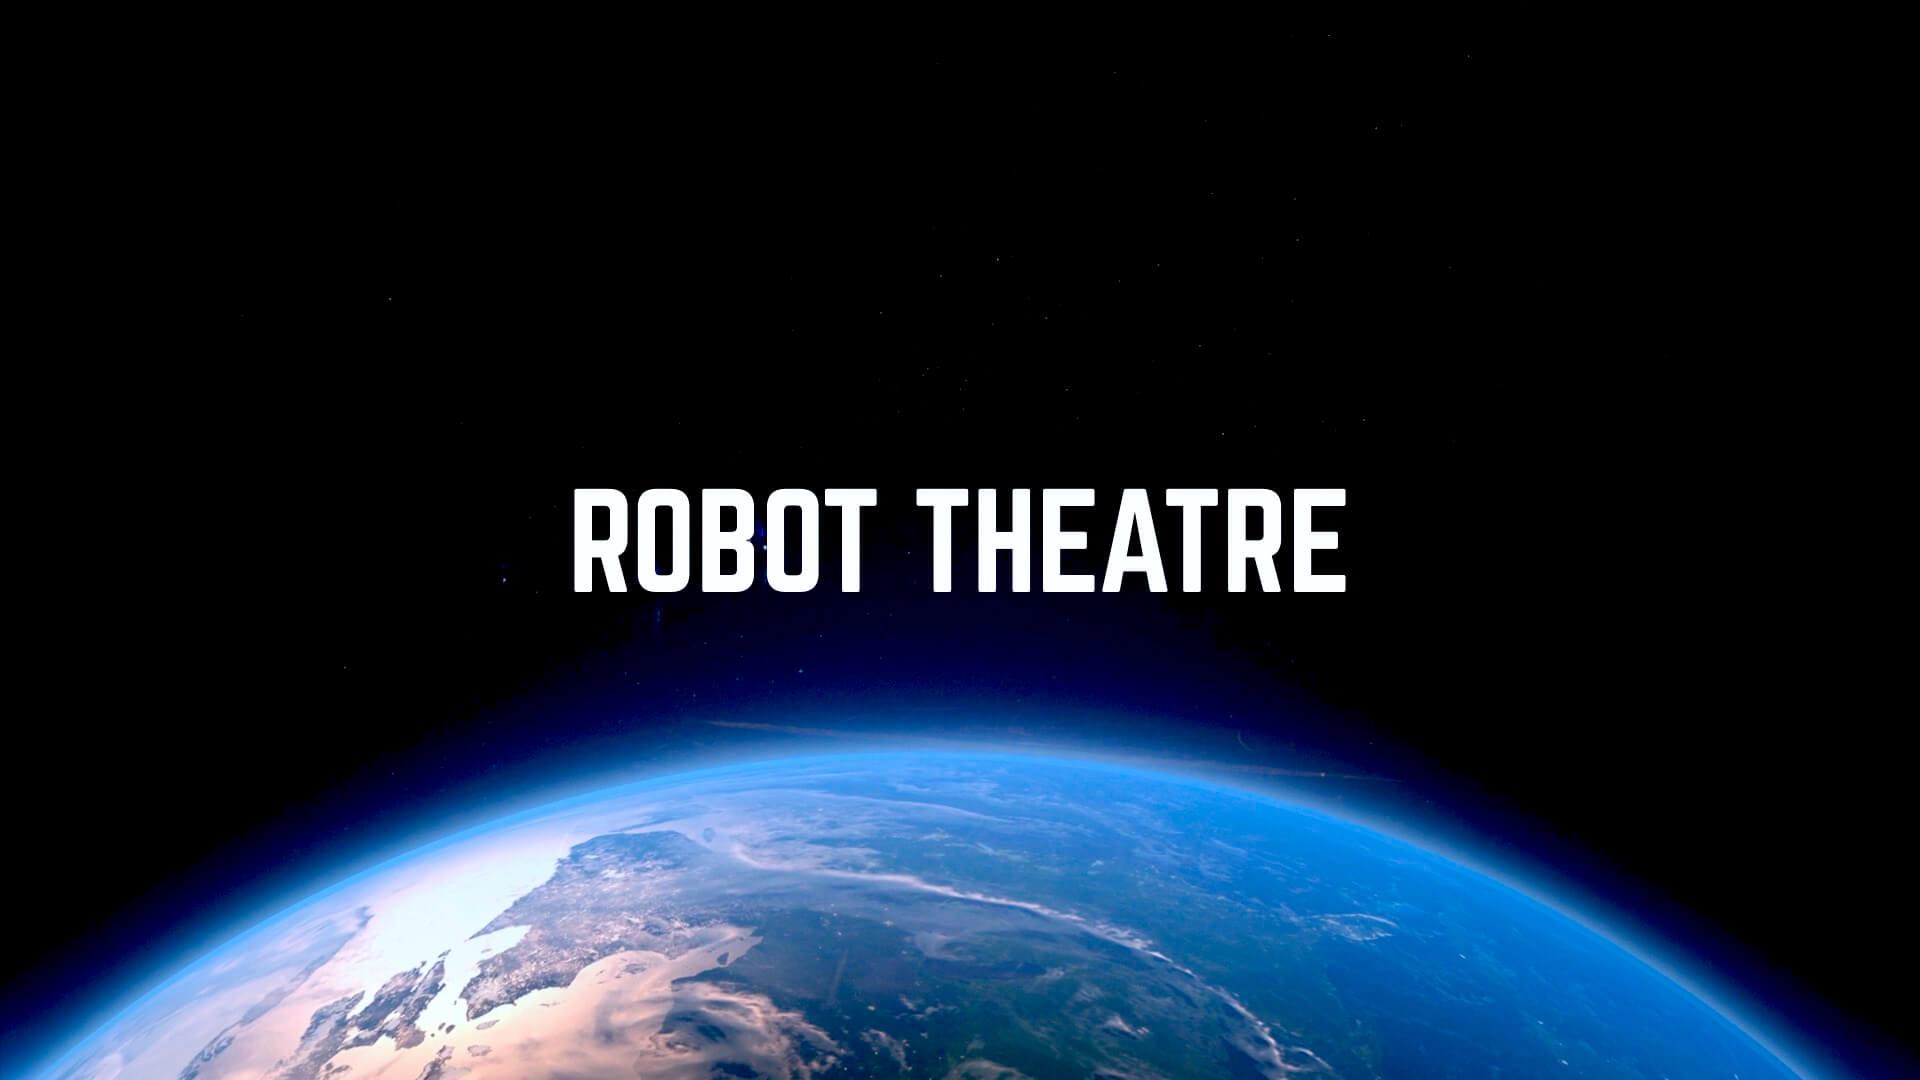 Robot theatre